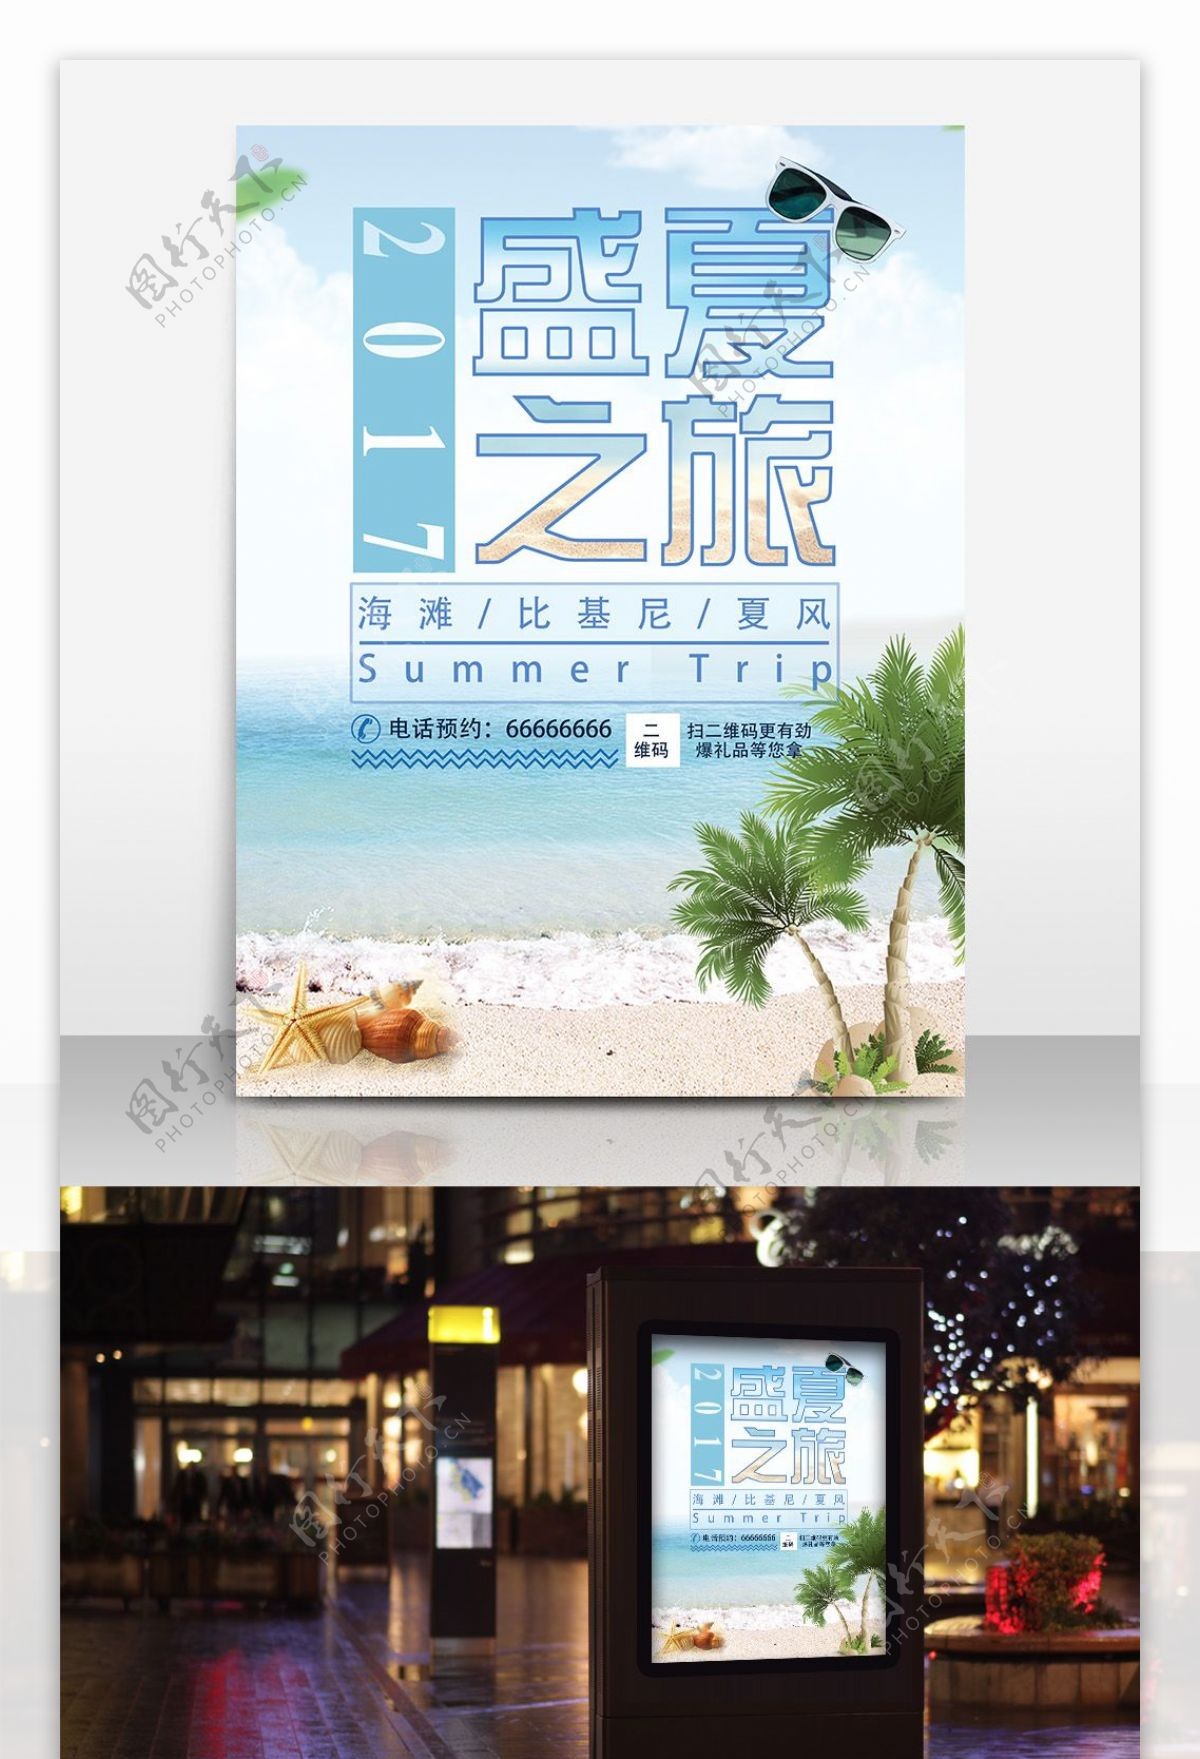 夏季旅游旅行社宣传海报PSD